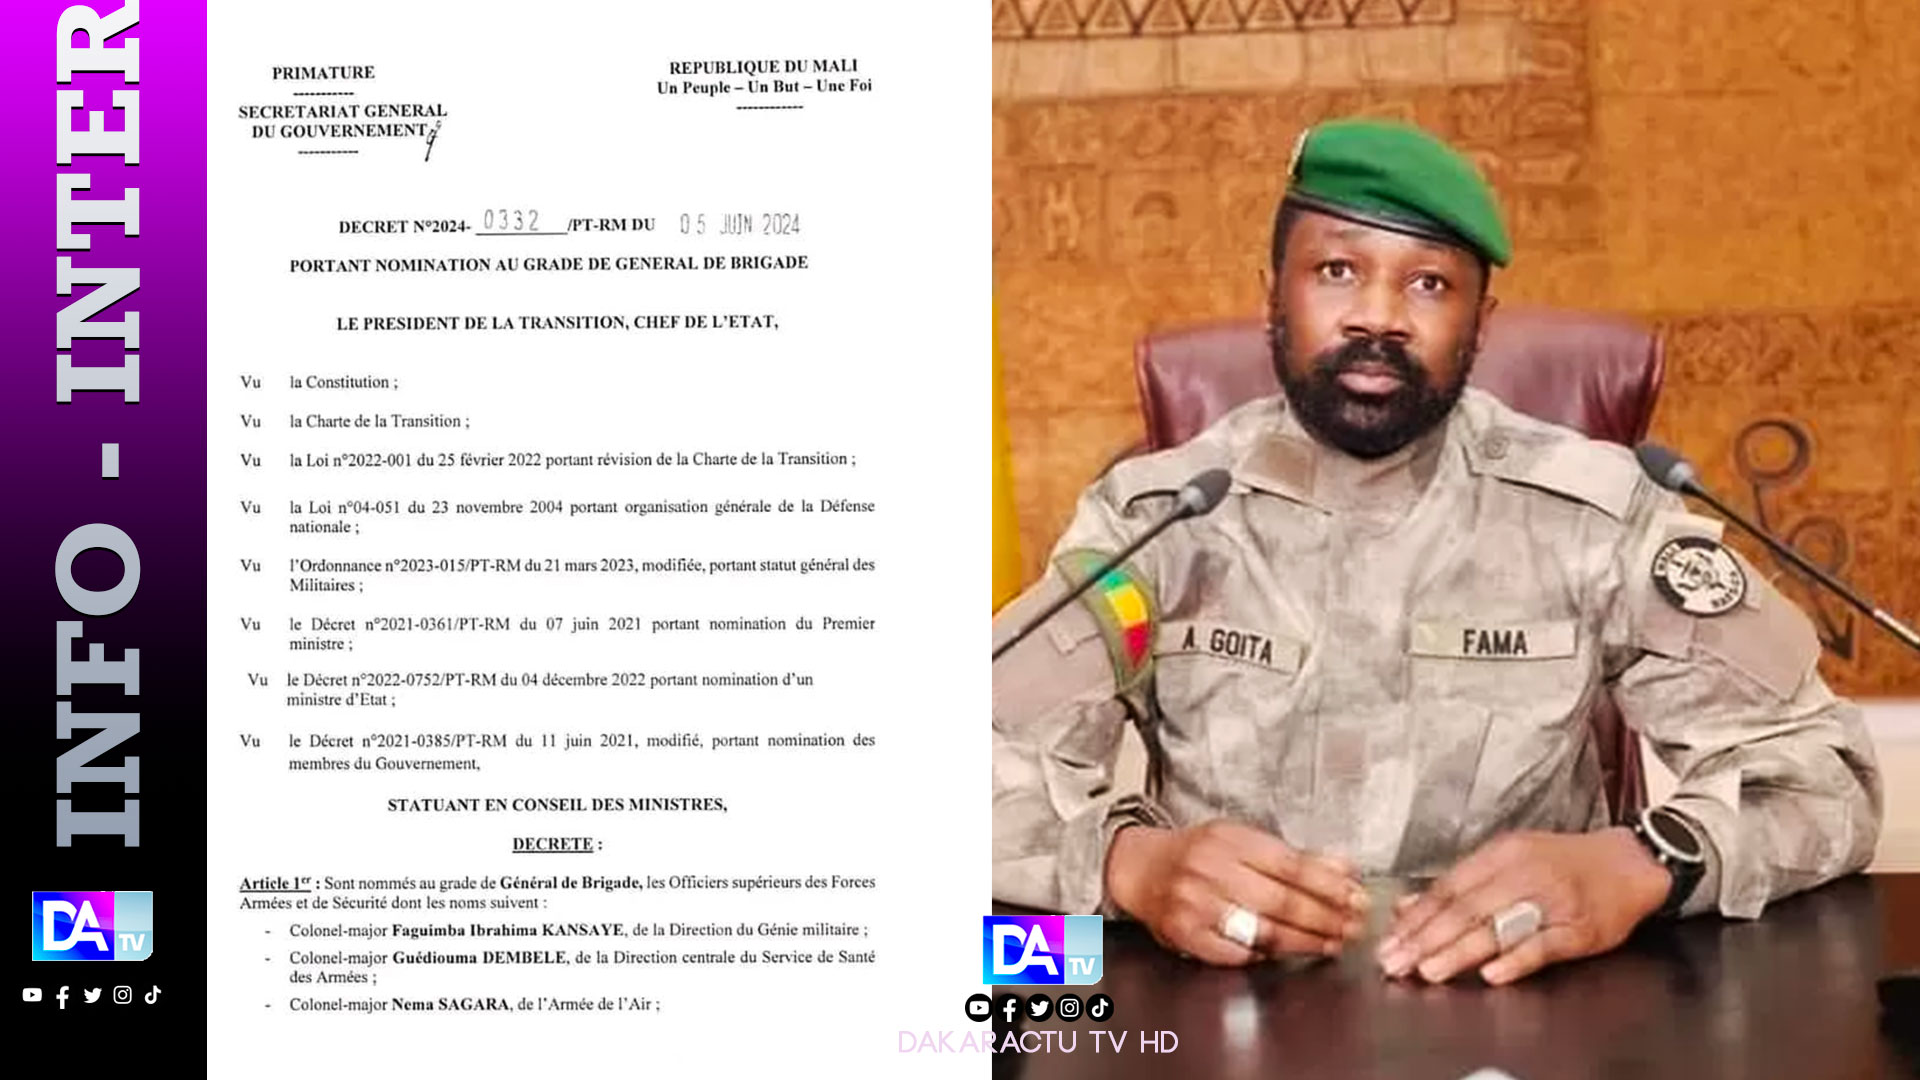 Mali: 20 colonels de l’armée promus au grade de général de brigade par le président de la tansition colonel Assimi Goïta